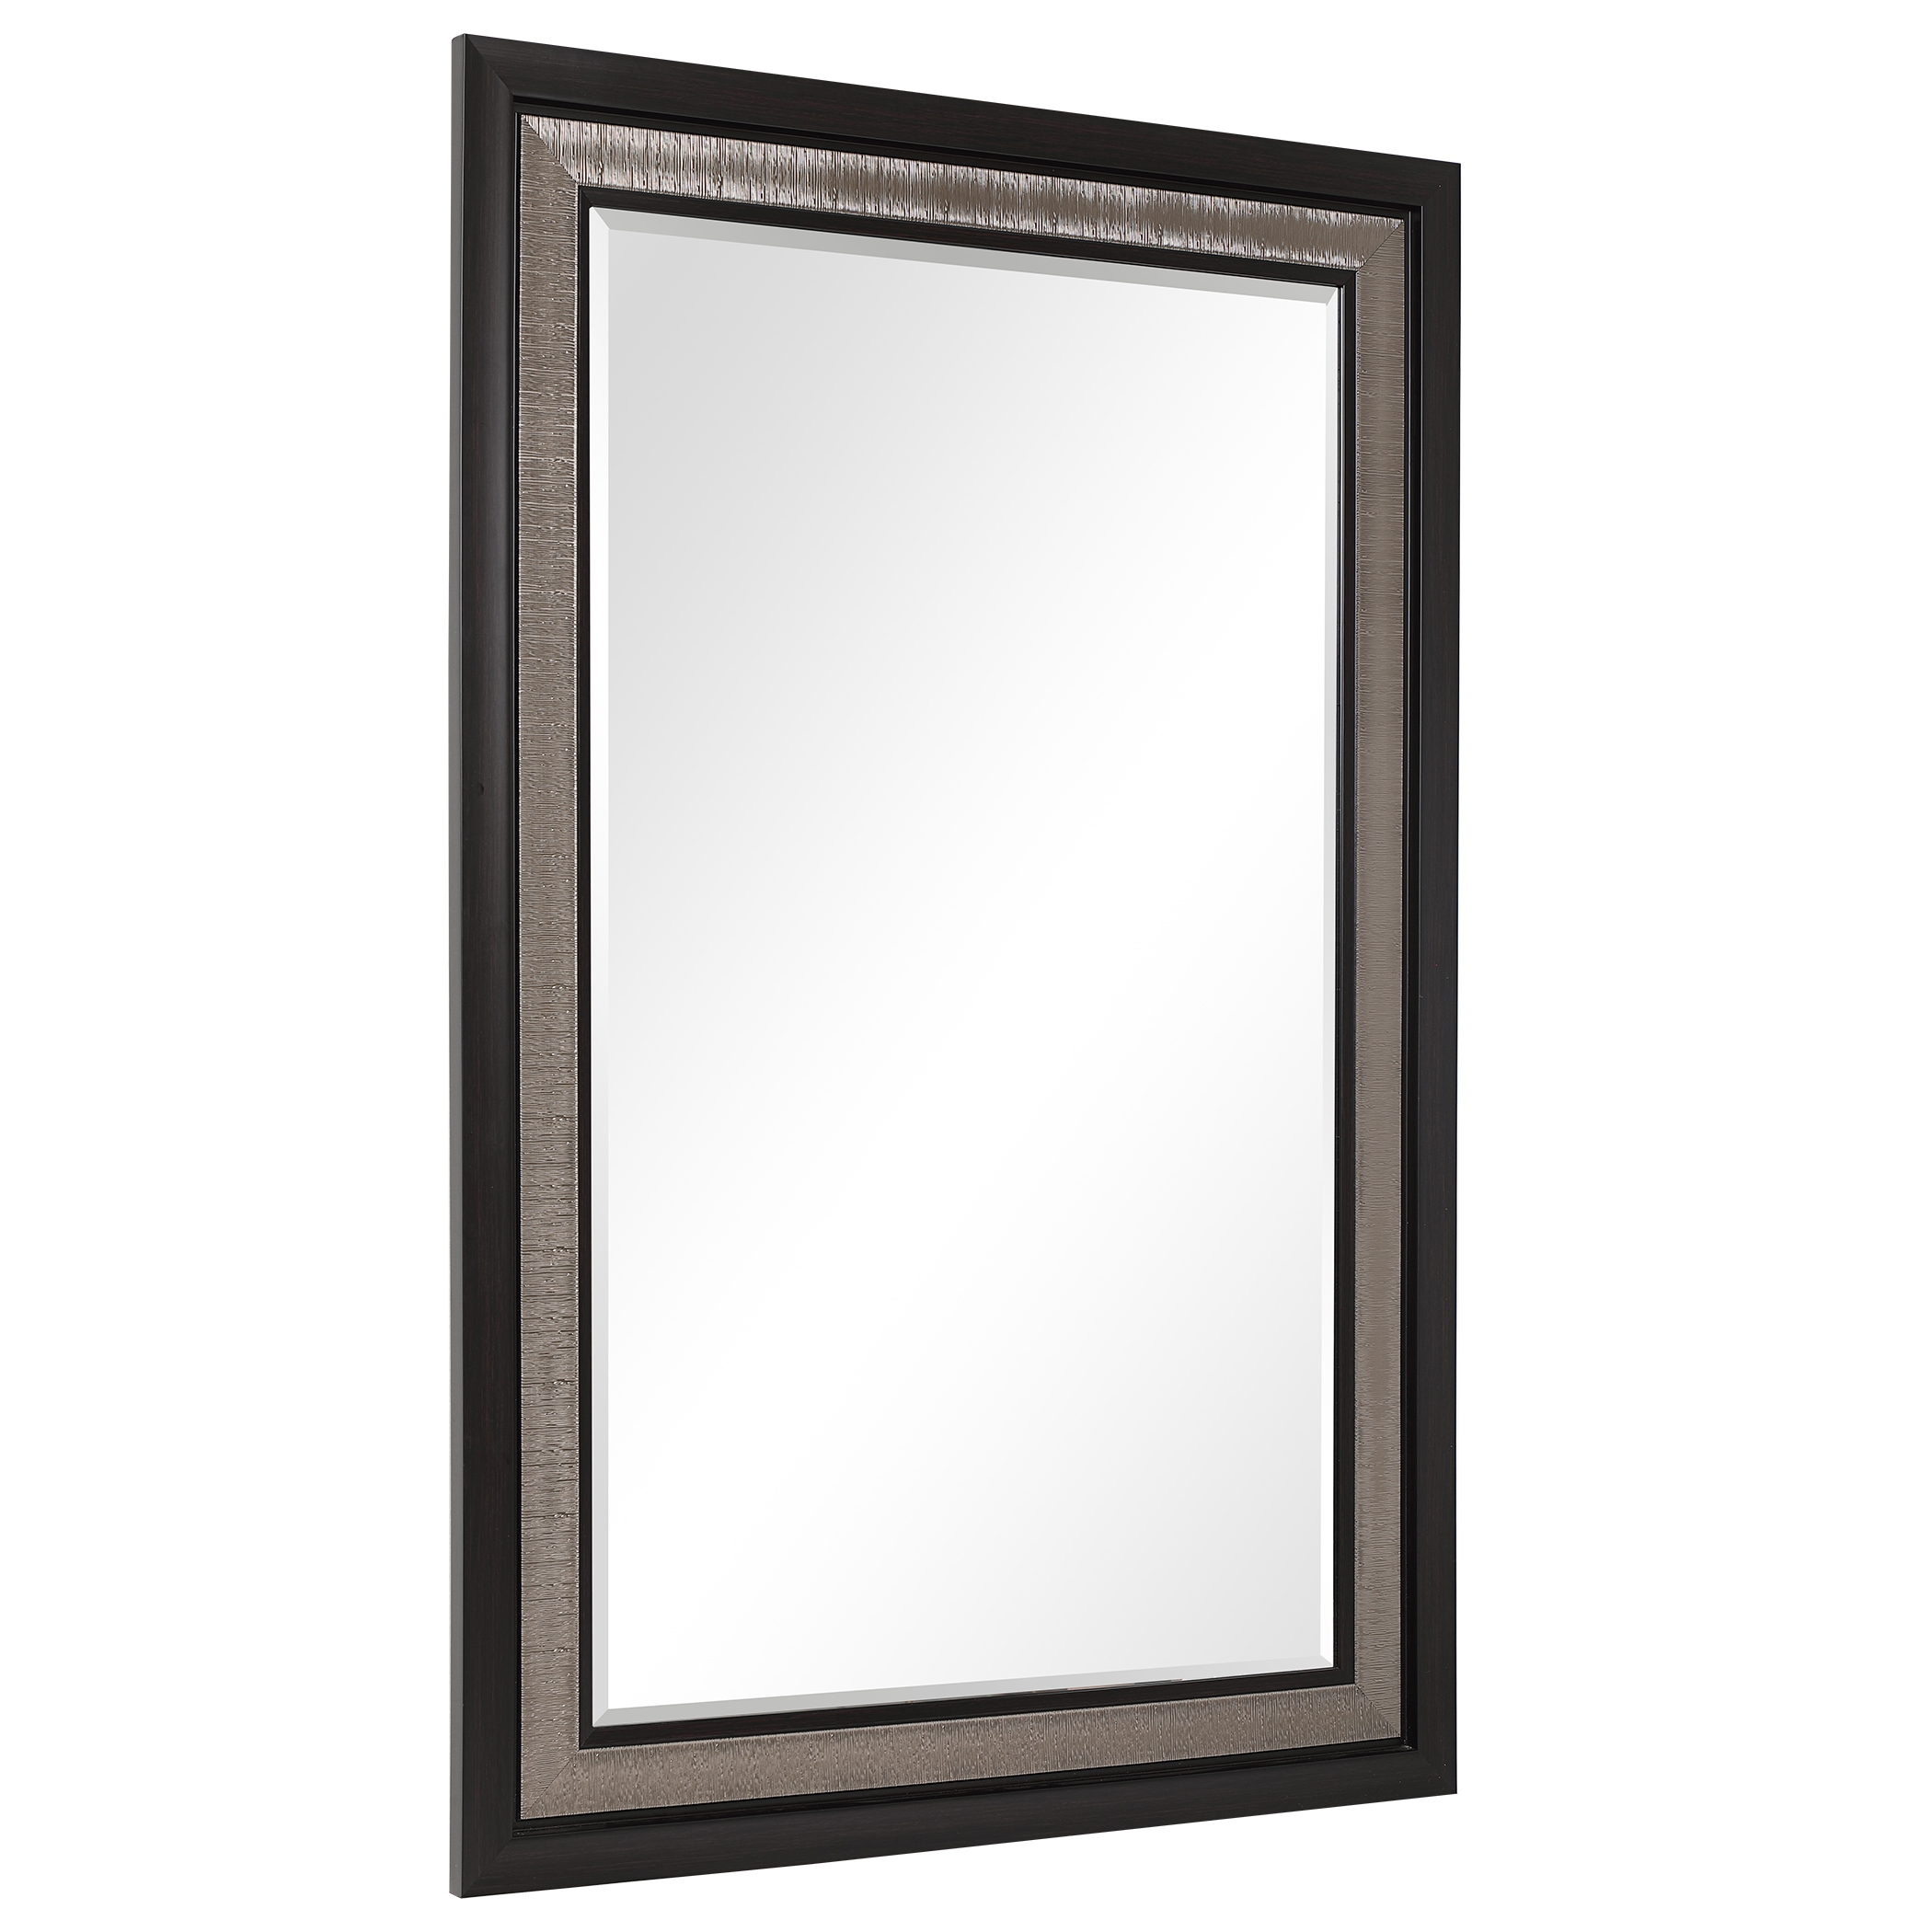 Chamberlain Silver & Ebony Mirror - Image 2